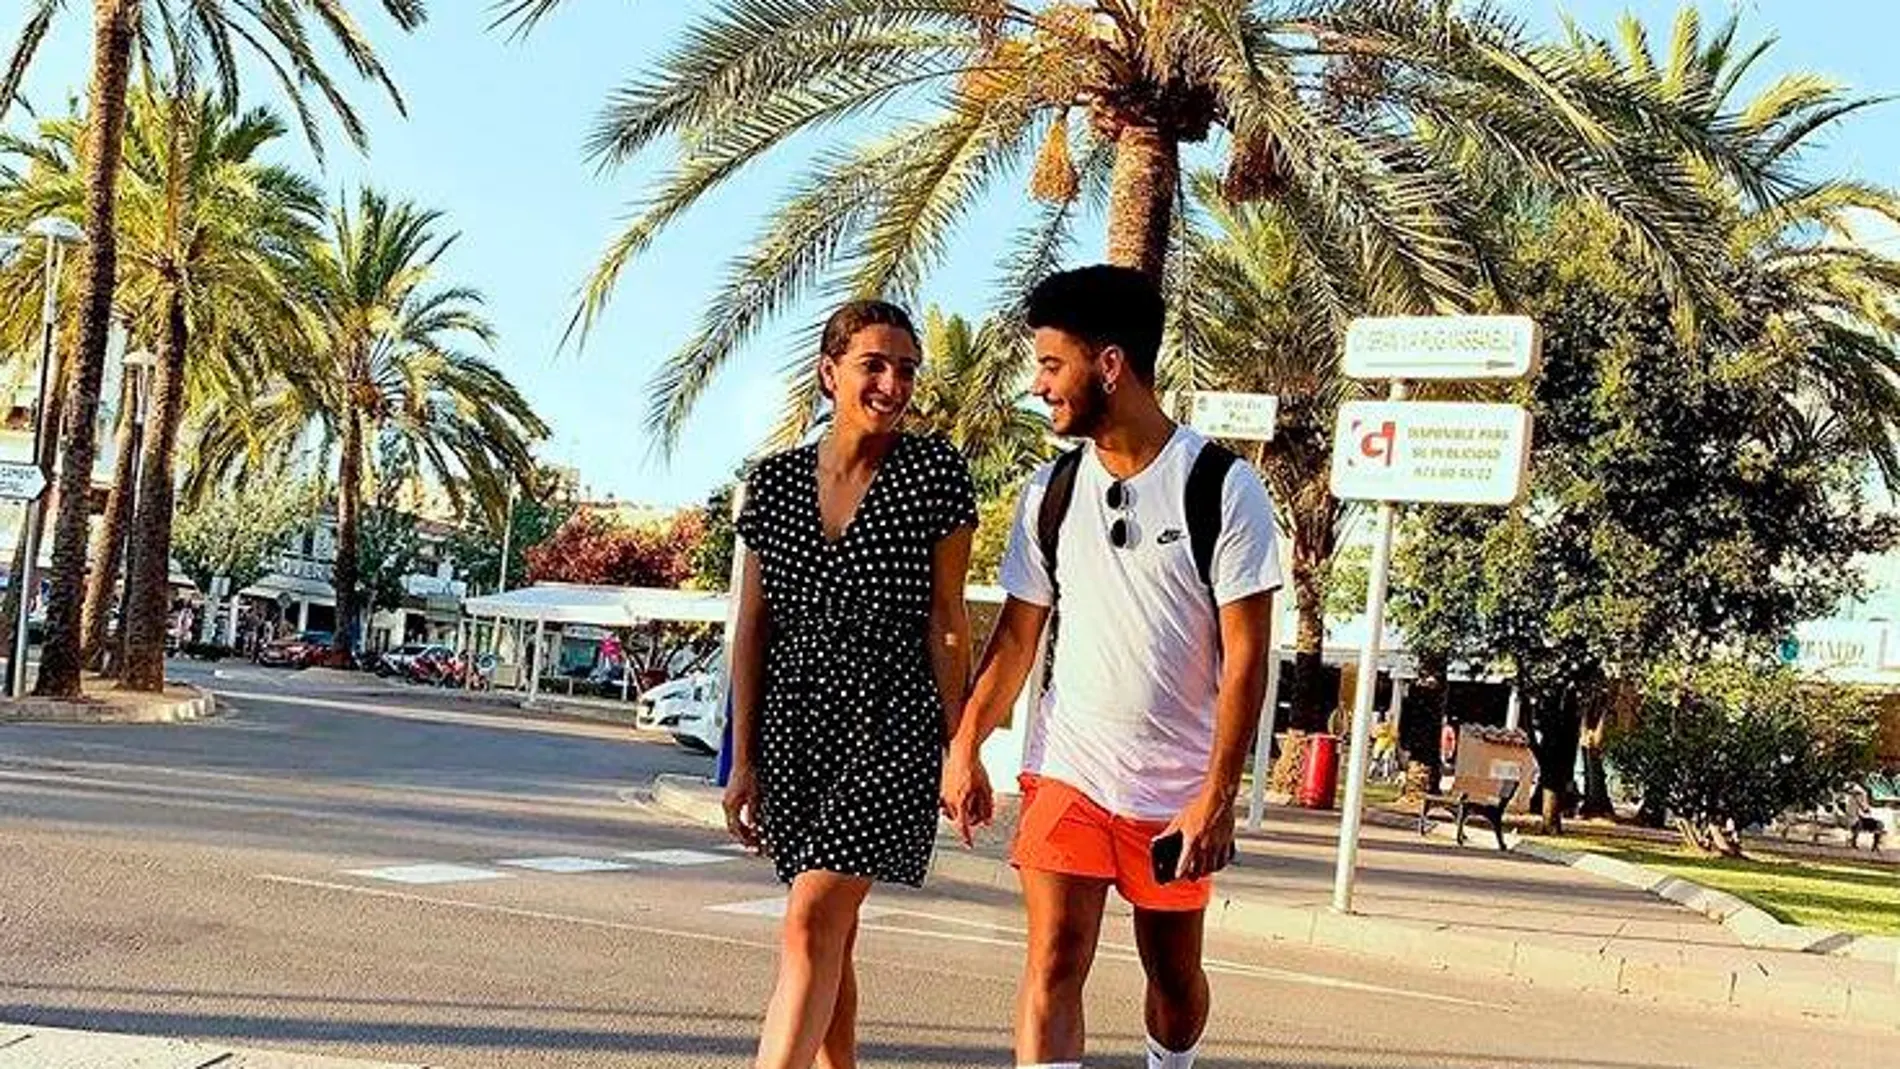 Alma Cortés posa junto a su novio, en una imagen que ha subido a su cuenta de Instagram @almacbcortes